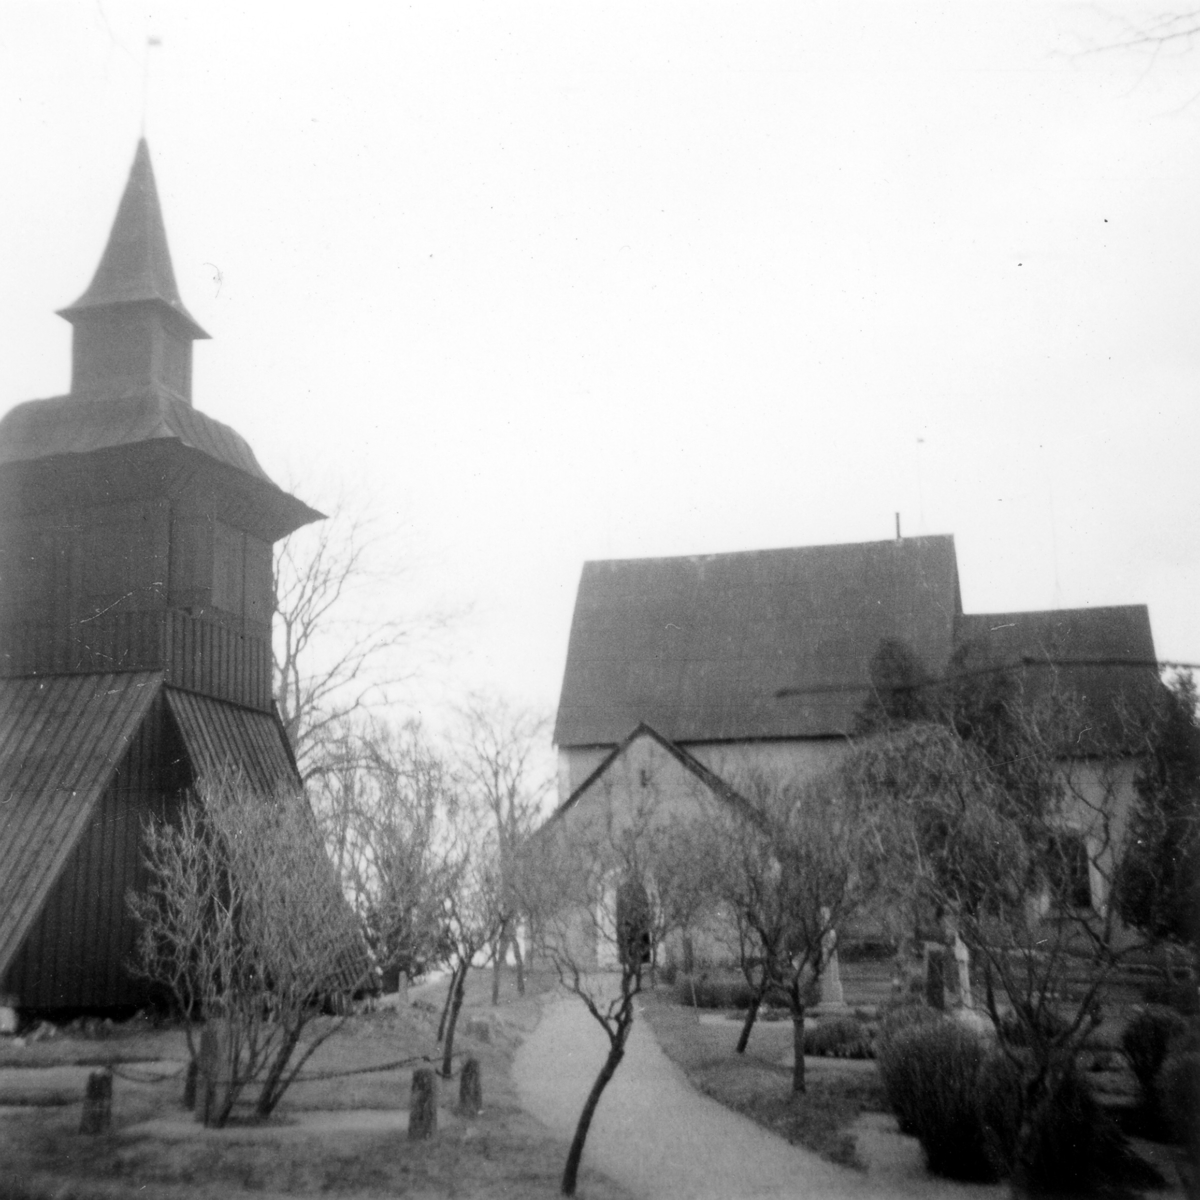 Markim kyrka